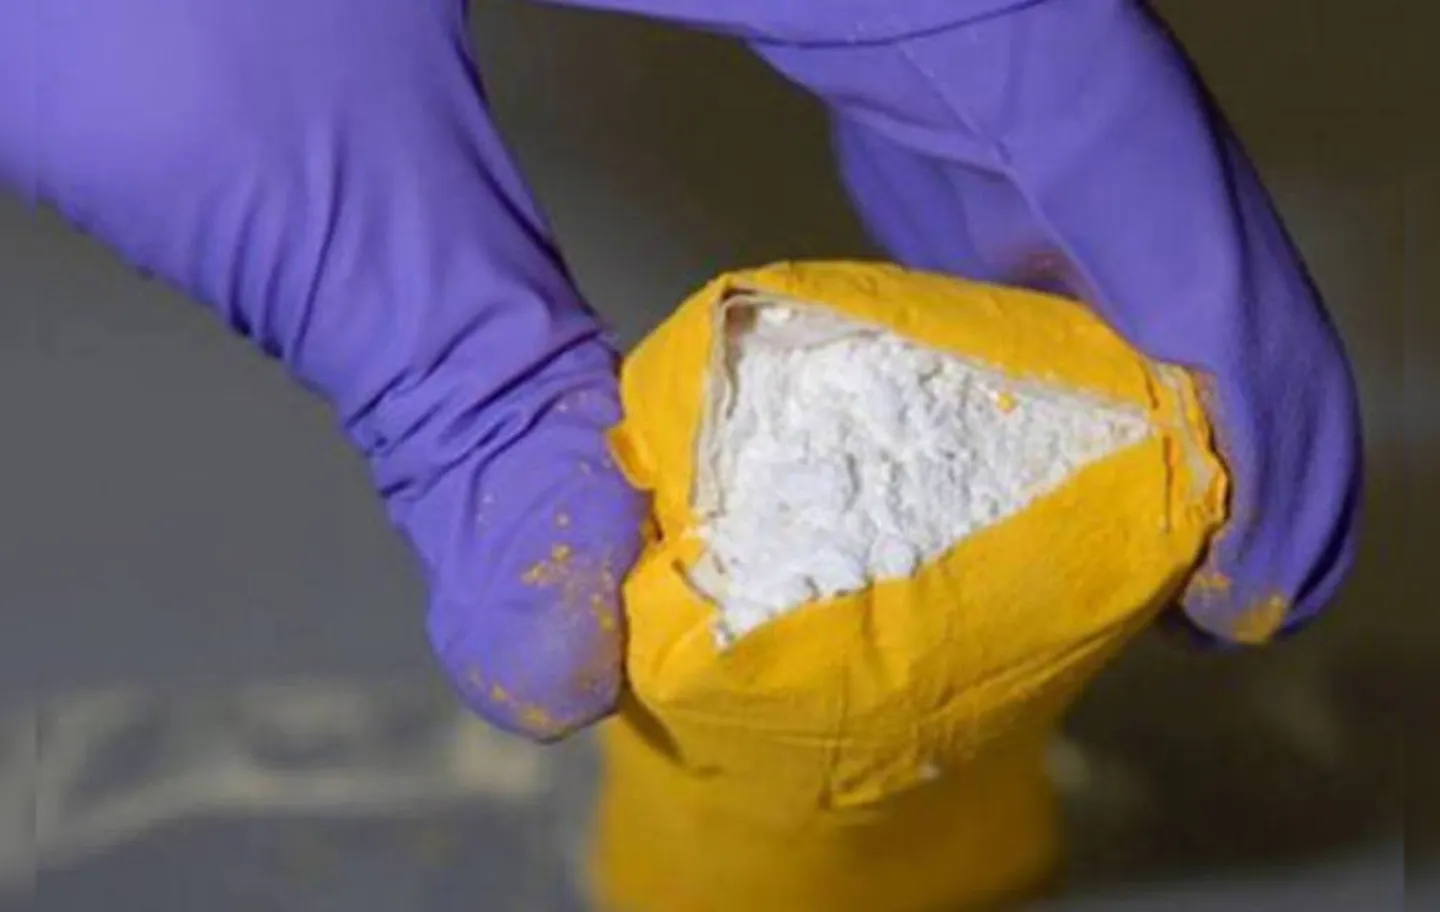 Cerca de 150 quilos de cocaína foram apreendidos pelas autoridades da Itália